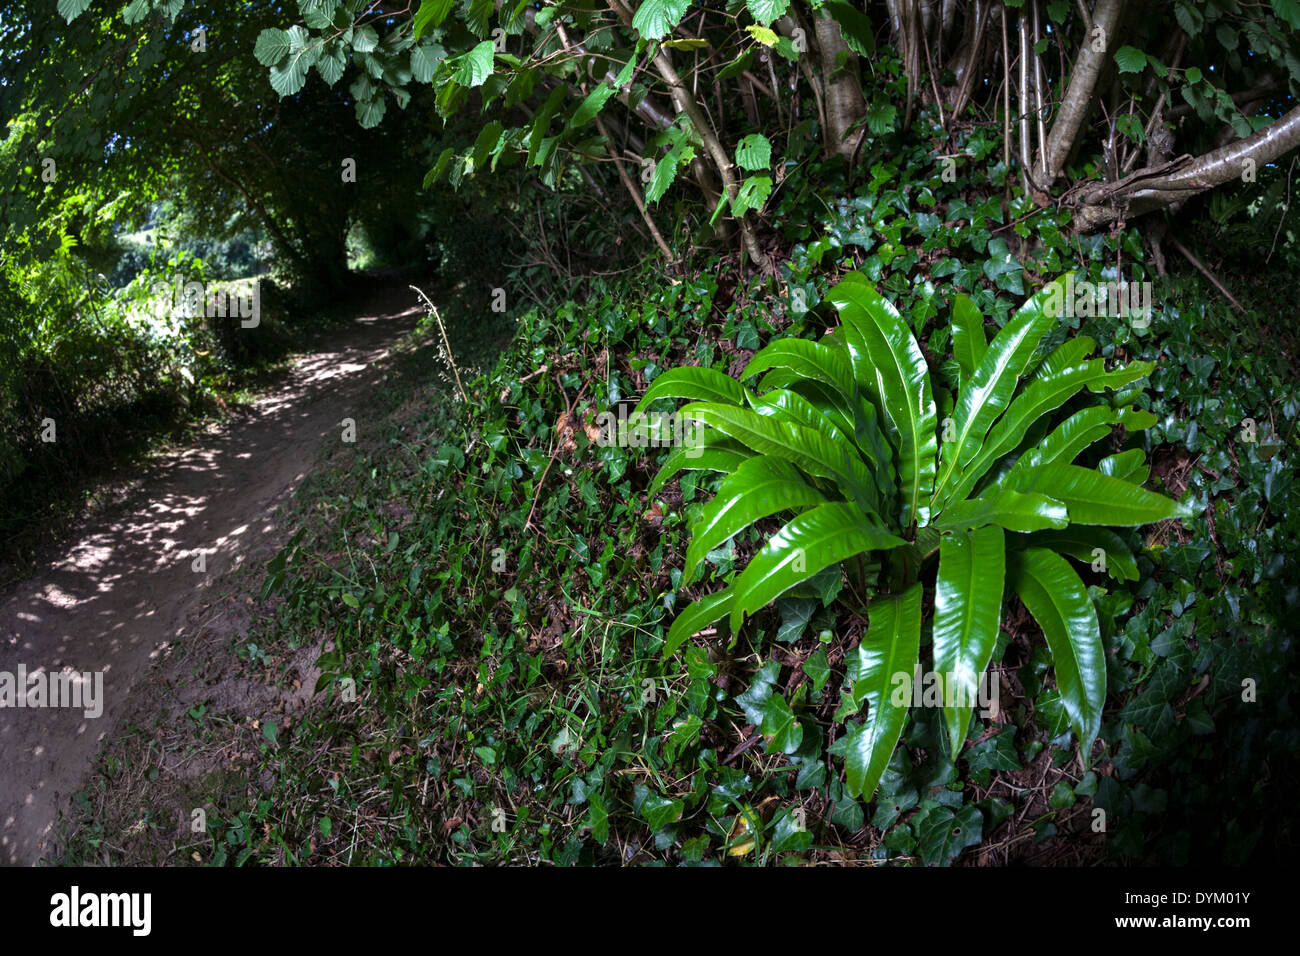 La hart-lingua (felci Asplenium scolopendrium), visto nella piegatura in una strada forestale (Bretagna - Francia). Harts linguetta fern Foto Stock